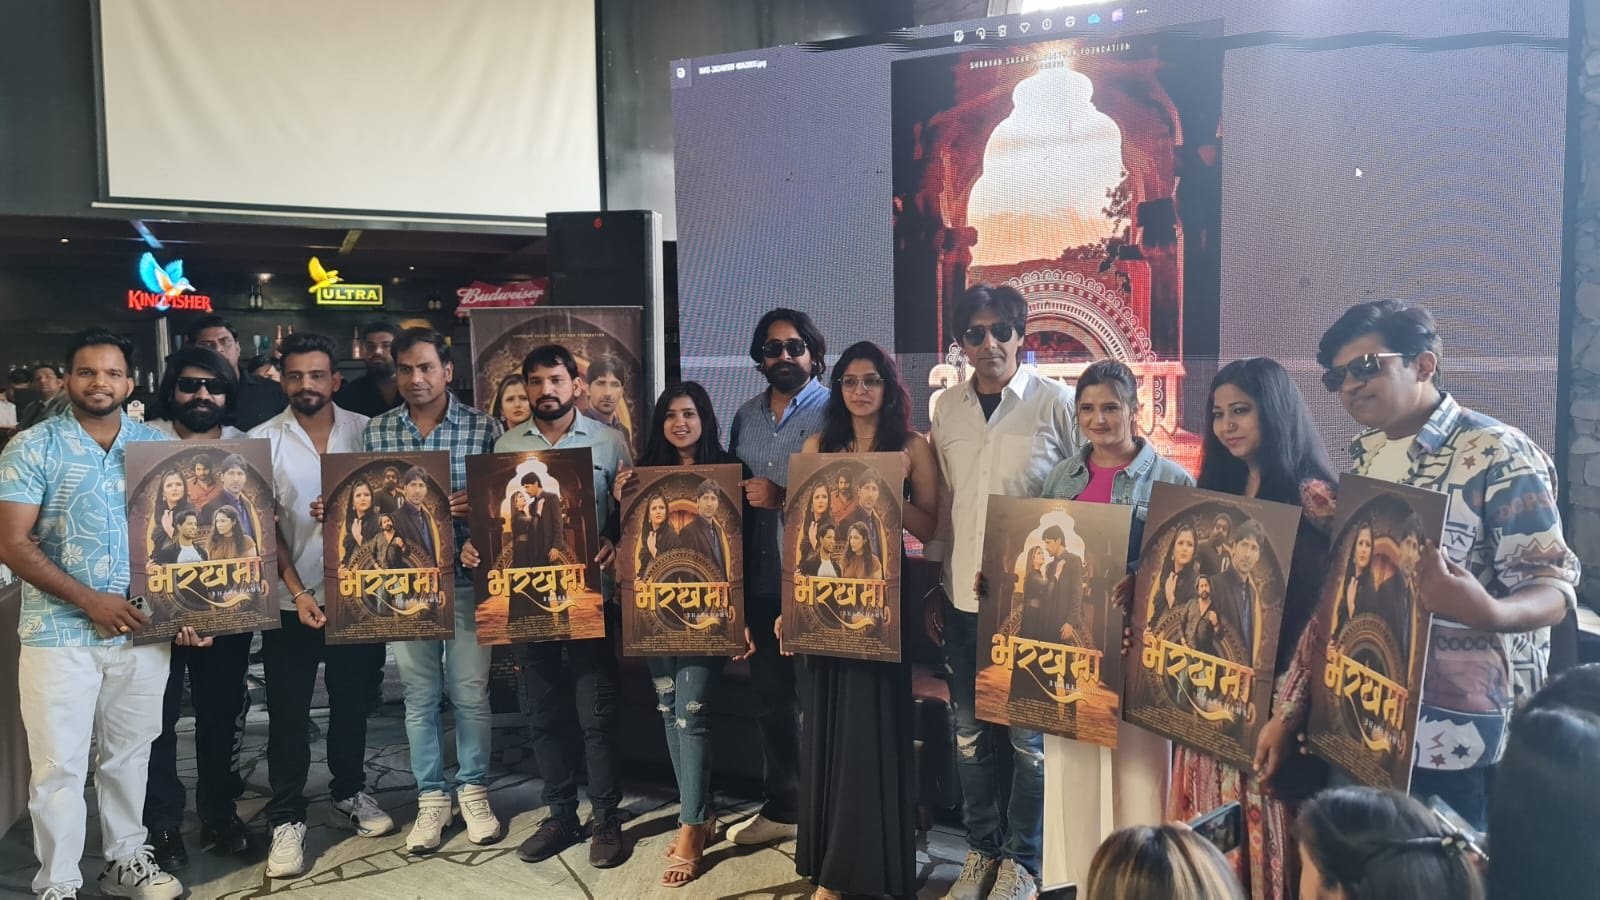 अवॉर्ड विनिंग पुस्तक पर बनी राजस्थानी फिल्म ‘भरखमा’ देशभर के 60 सिनेमाघरों में होगी रिलीज, एक्टर श्रवण सागर और अंजलि राघव मुख्य भूमिका में